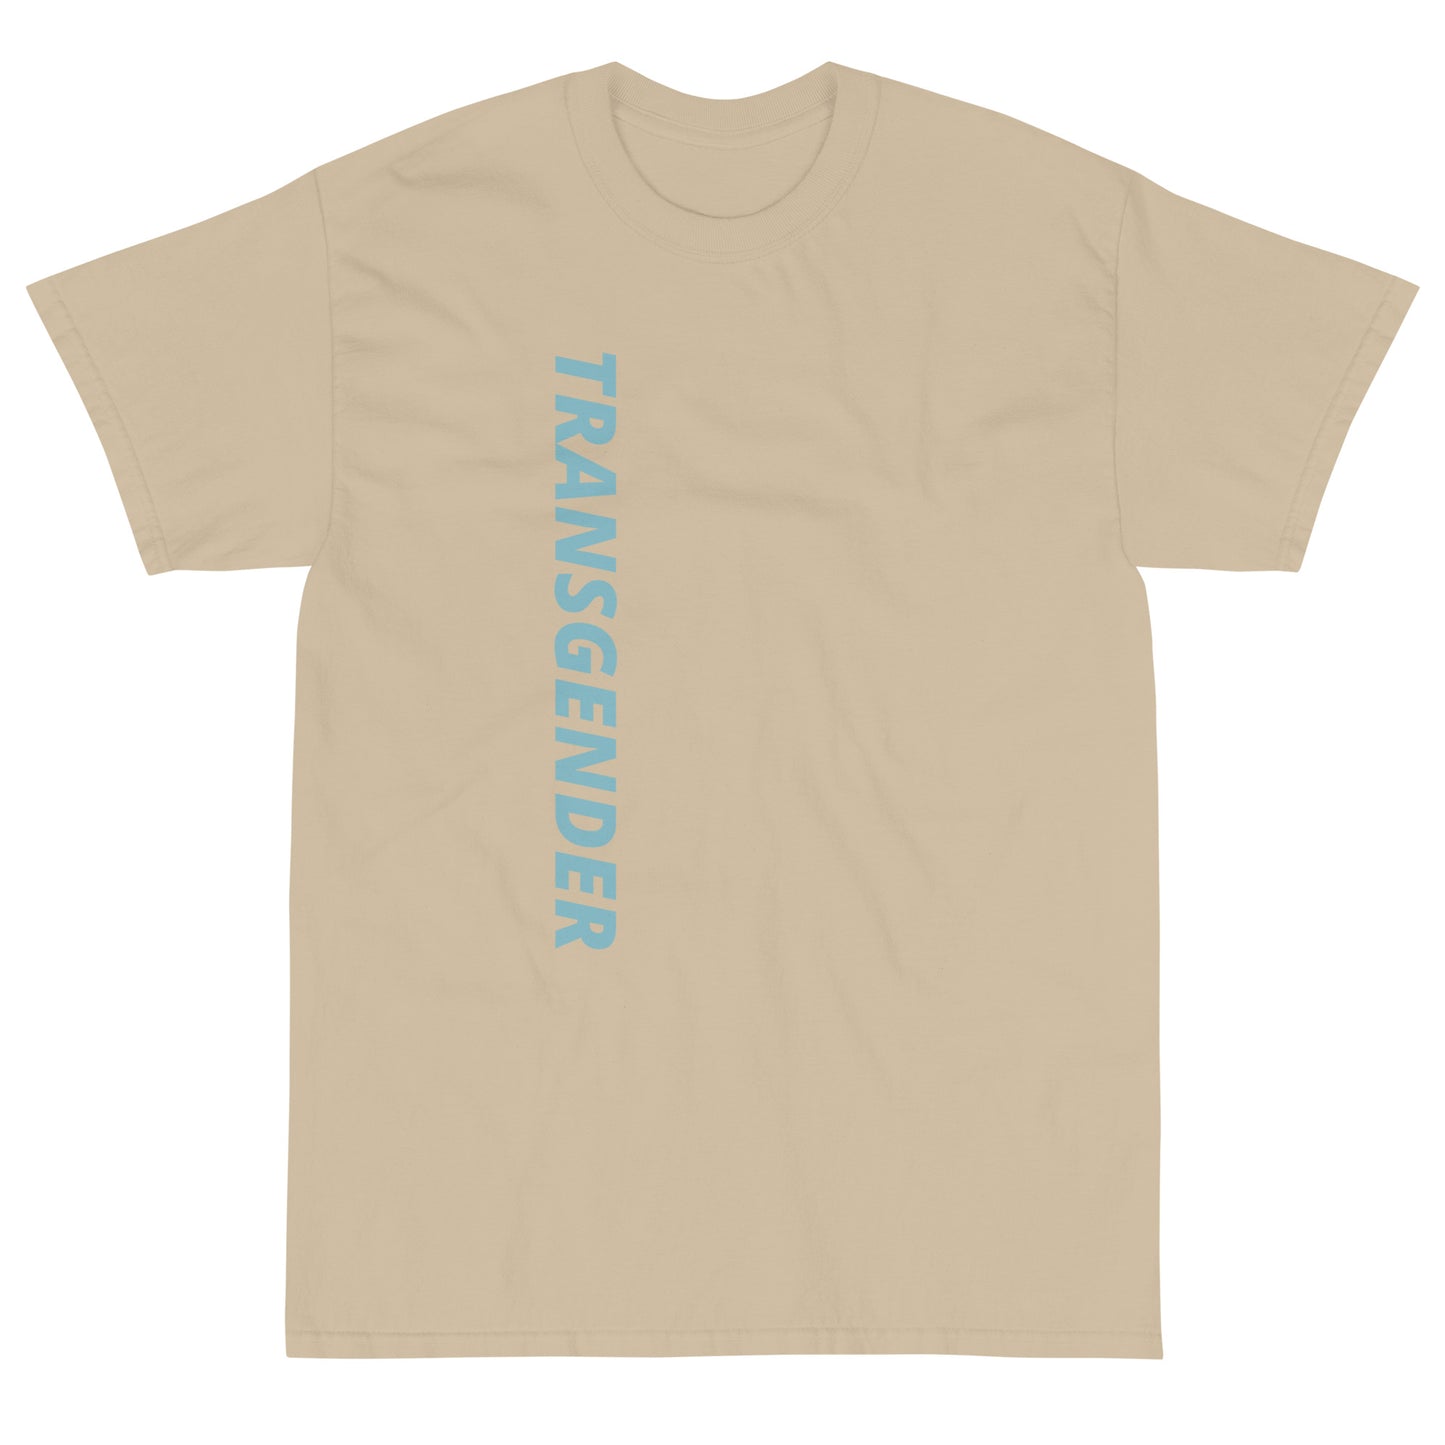 "Transgender" Short Sleeve T-Shirt